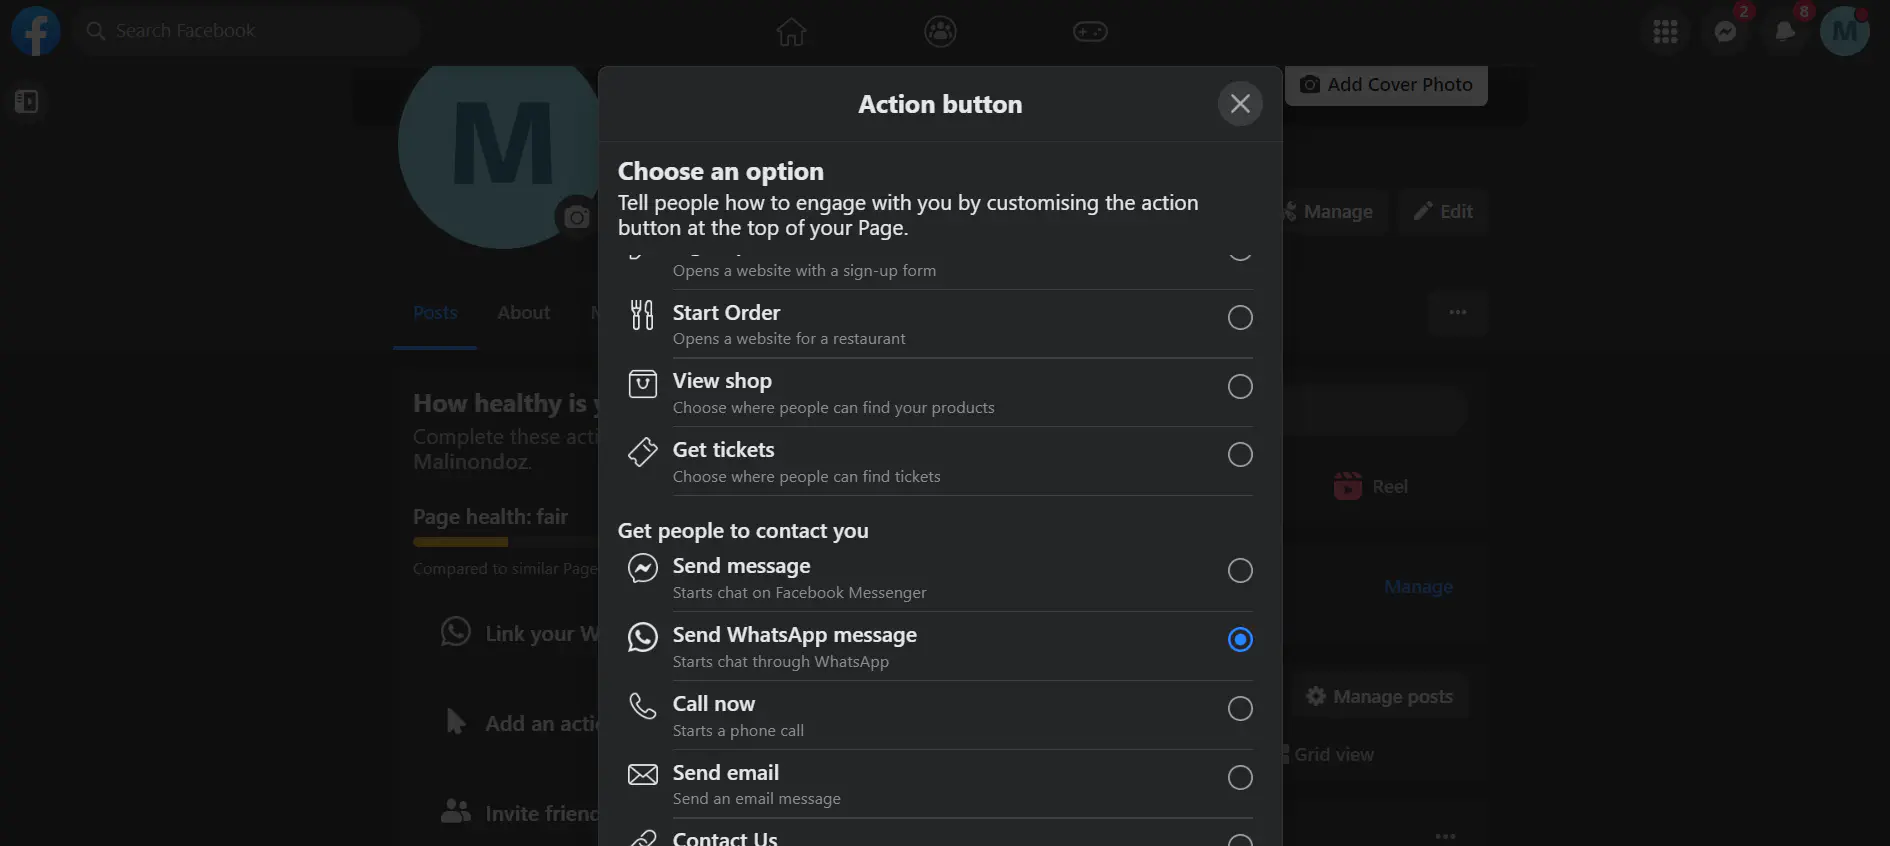 Action button list.